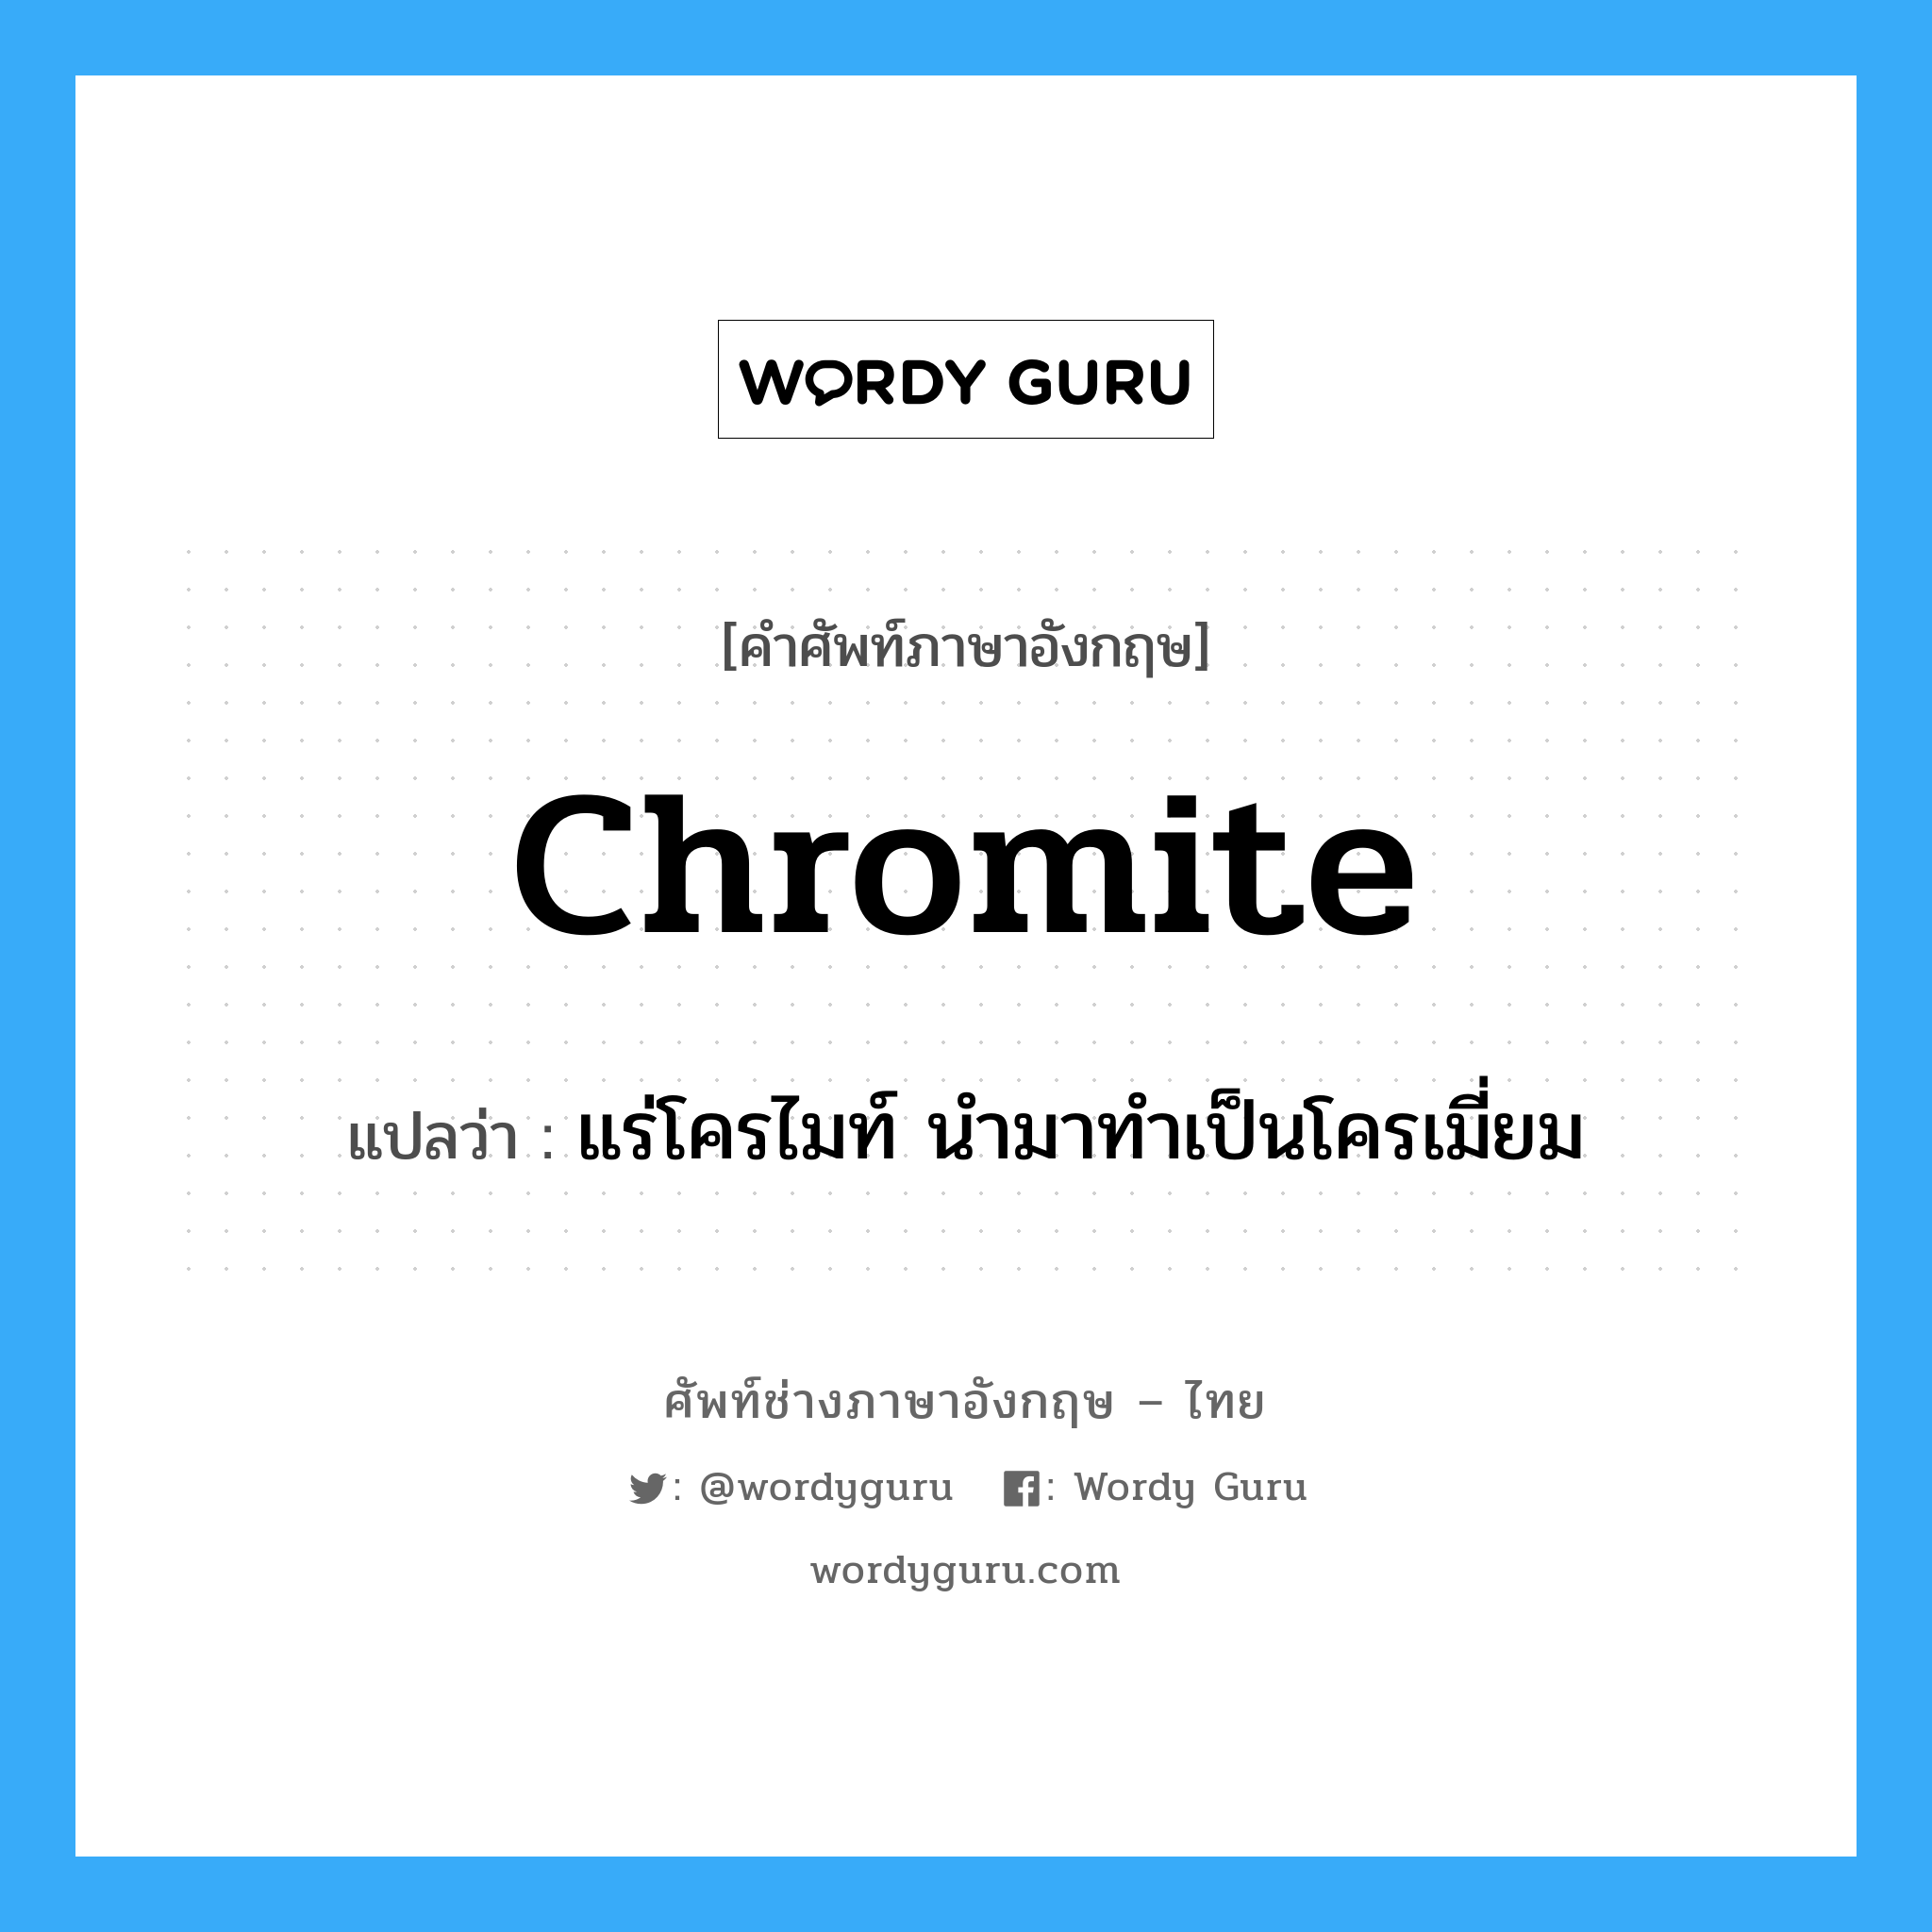 แร่โครไมท์ นำมาทำเป็นโครเมี่ยม ภาษาอังกฤษ?, คำศัพท์ช่างภาษาอังกฤษ - ไทย แร่โครไมท์ นำมาทำเป็นโครเมี่ยม คำศัพท์ภาษาอังกฤษ แร่โครไมท์ นำมาทำเป็นโครเมี่ยม แปลว่า chromite